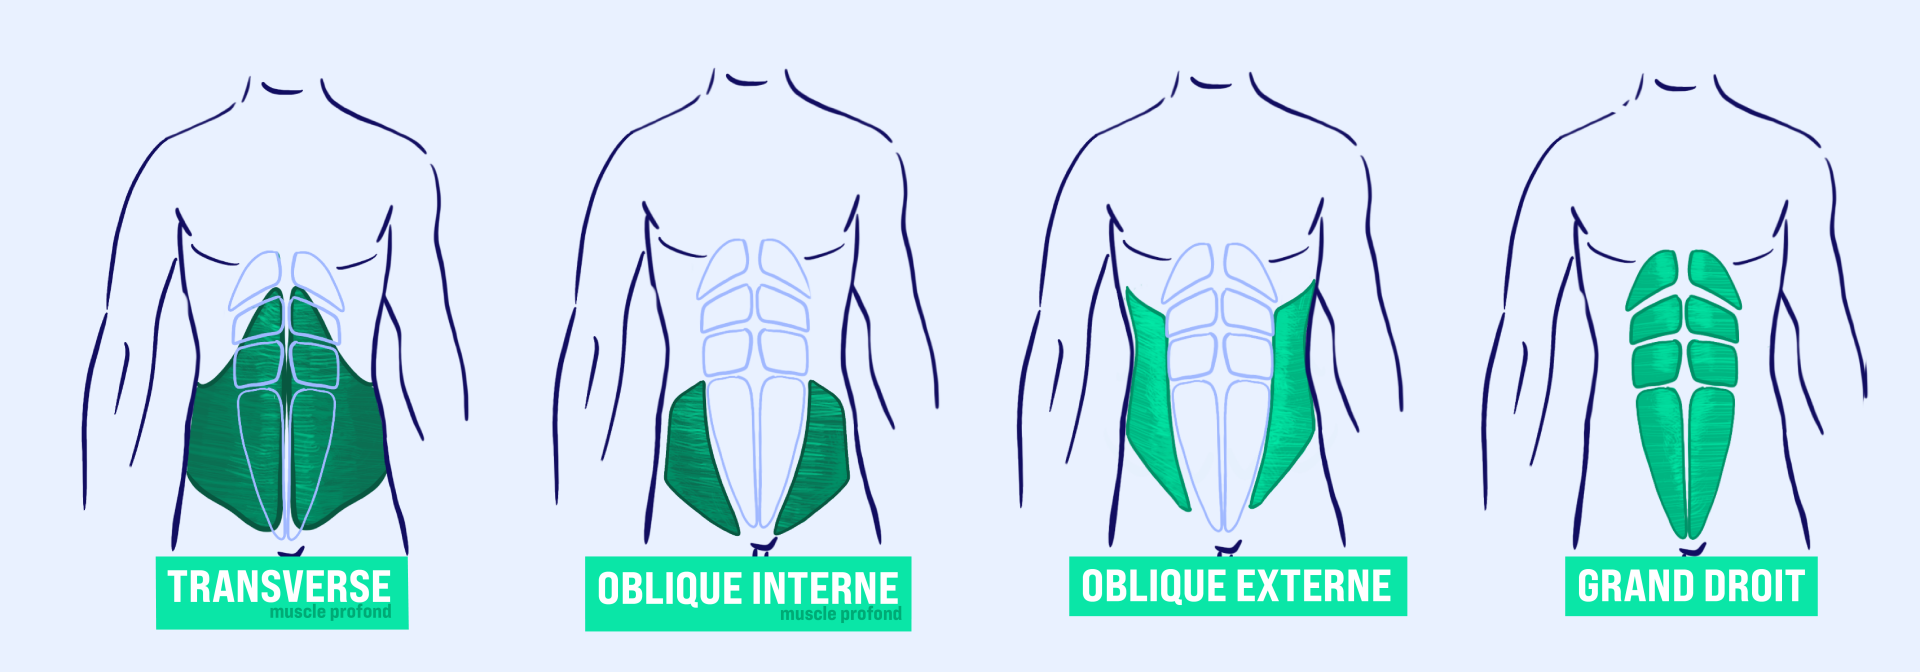 ABDOMINAUX, Exercices pour muscle abdominaux : petit oblique, grand  oblique, Grand droit de l'abdomen